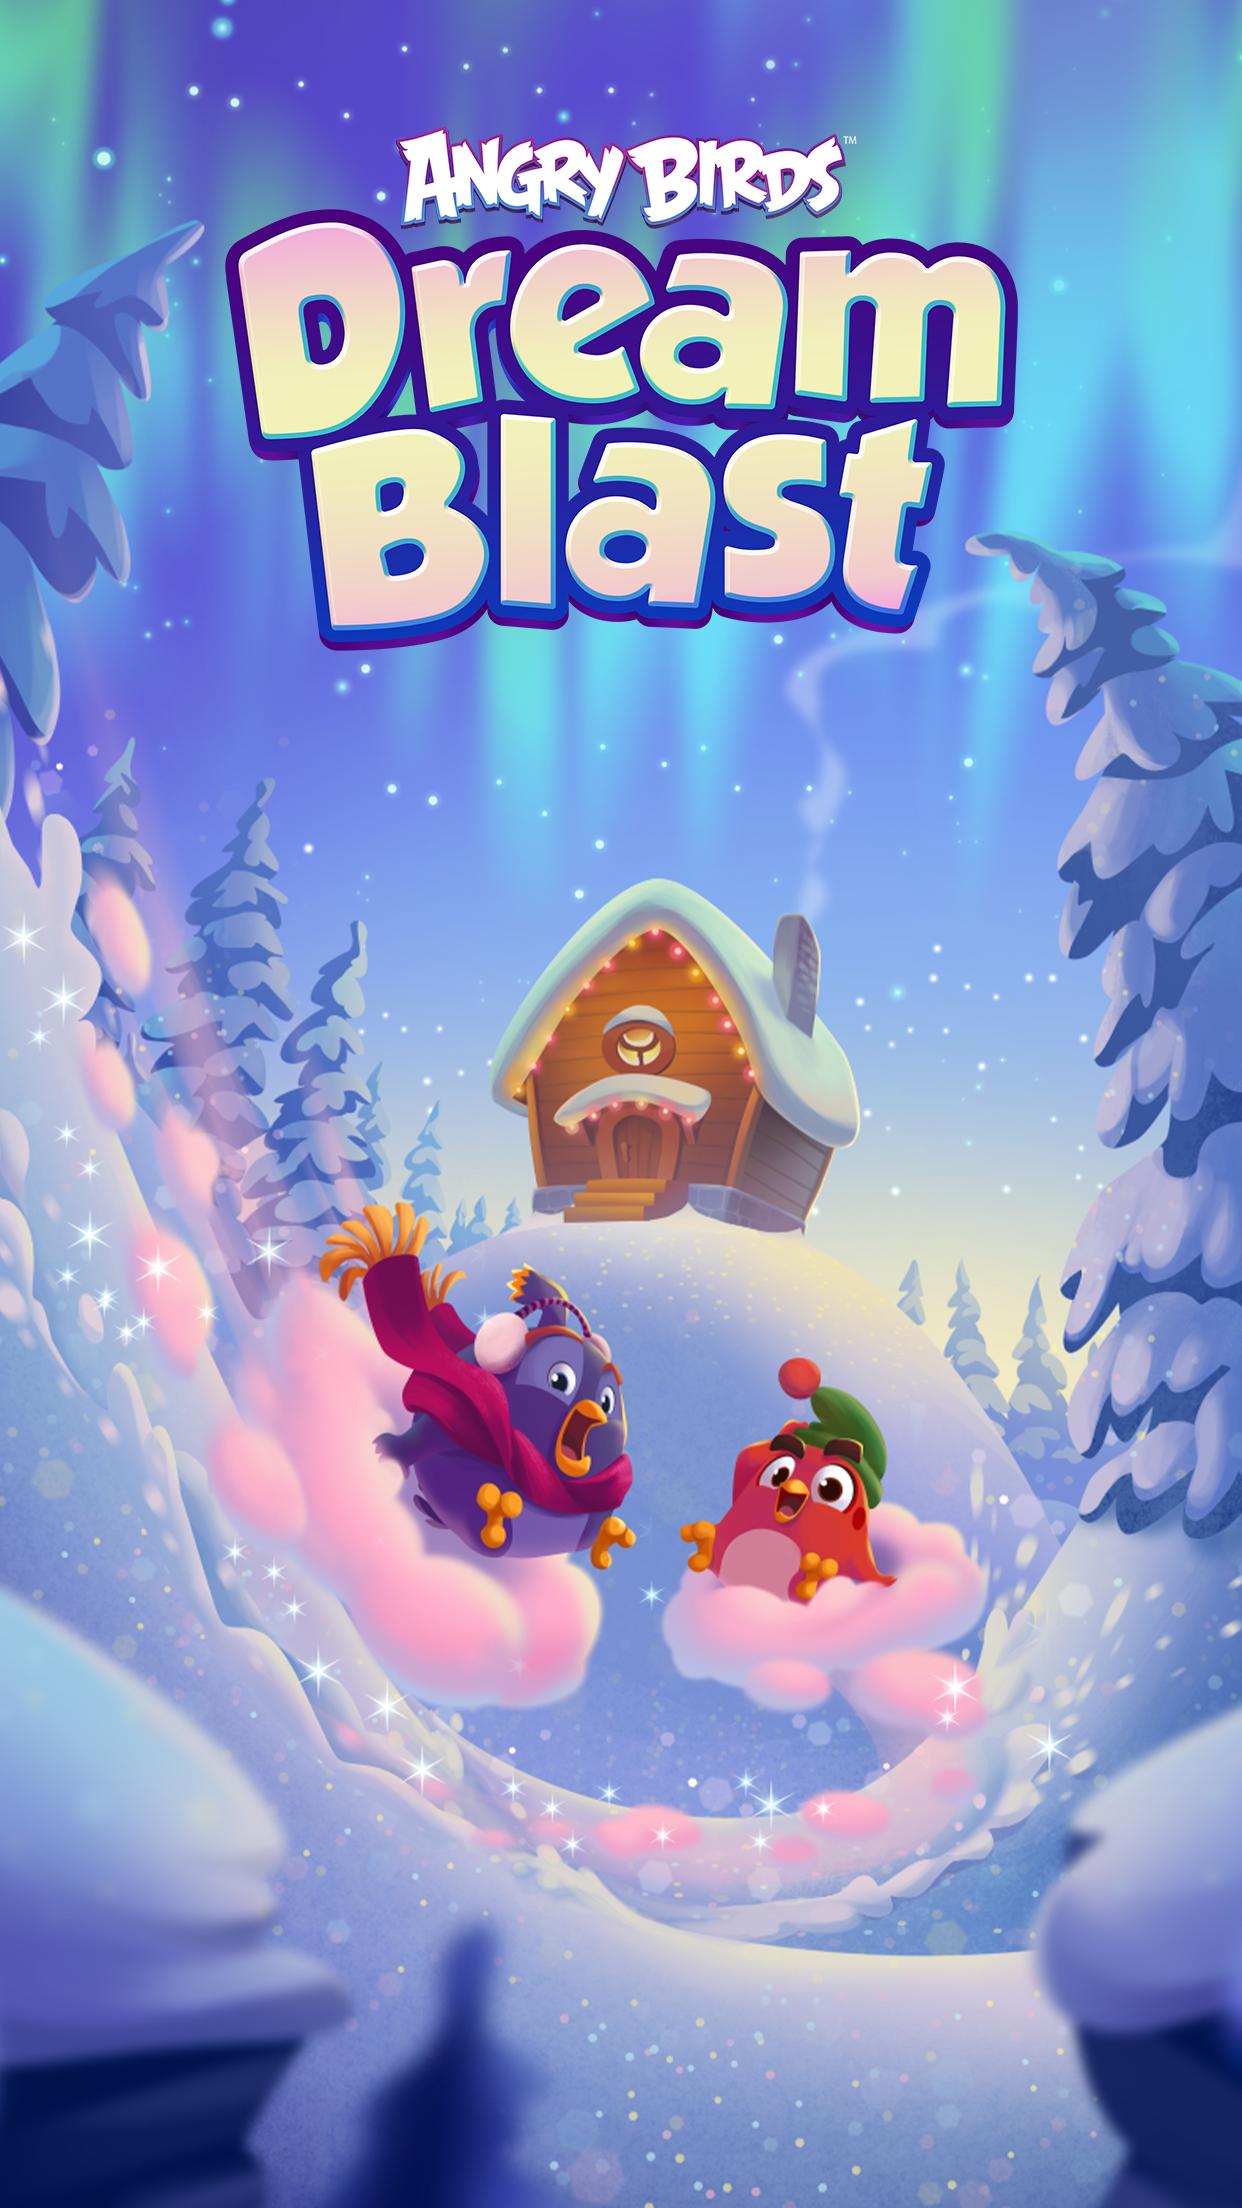 Dream blast обновить. Дрим Бласт. Angry Birds Dream Blast. Angry Birds Dream Blast Rovio. Angry Birds Dream Blast зима.